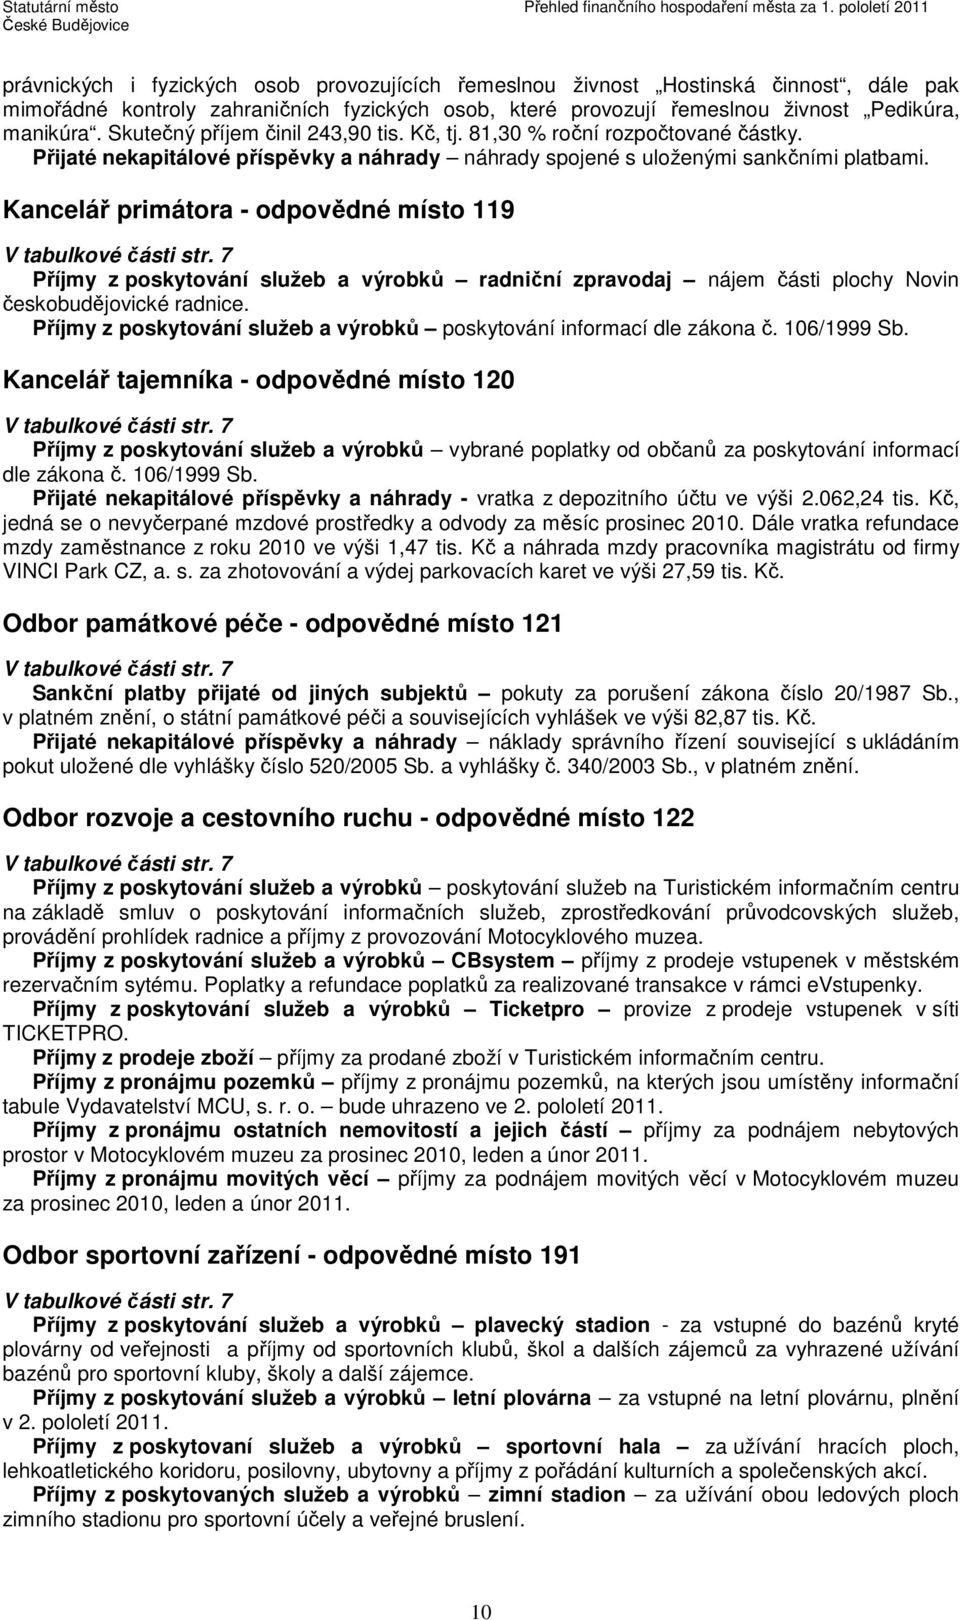 Kancelář primátora - odpovědné místo 119 V tabulkové části str. 7 Příjmy z poskytování služeb a výrobků radniční zpravodaj nájem části plochy Novin českobudějovické radnice.